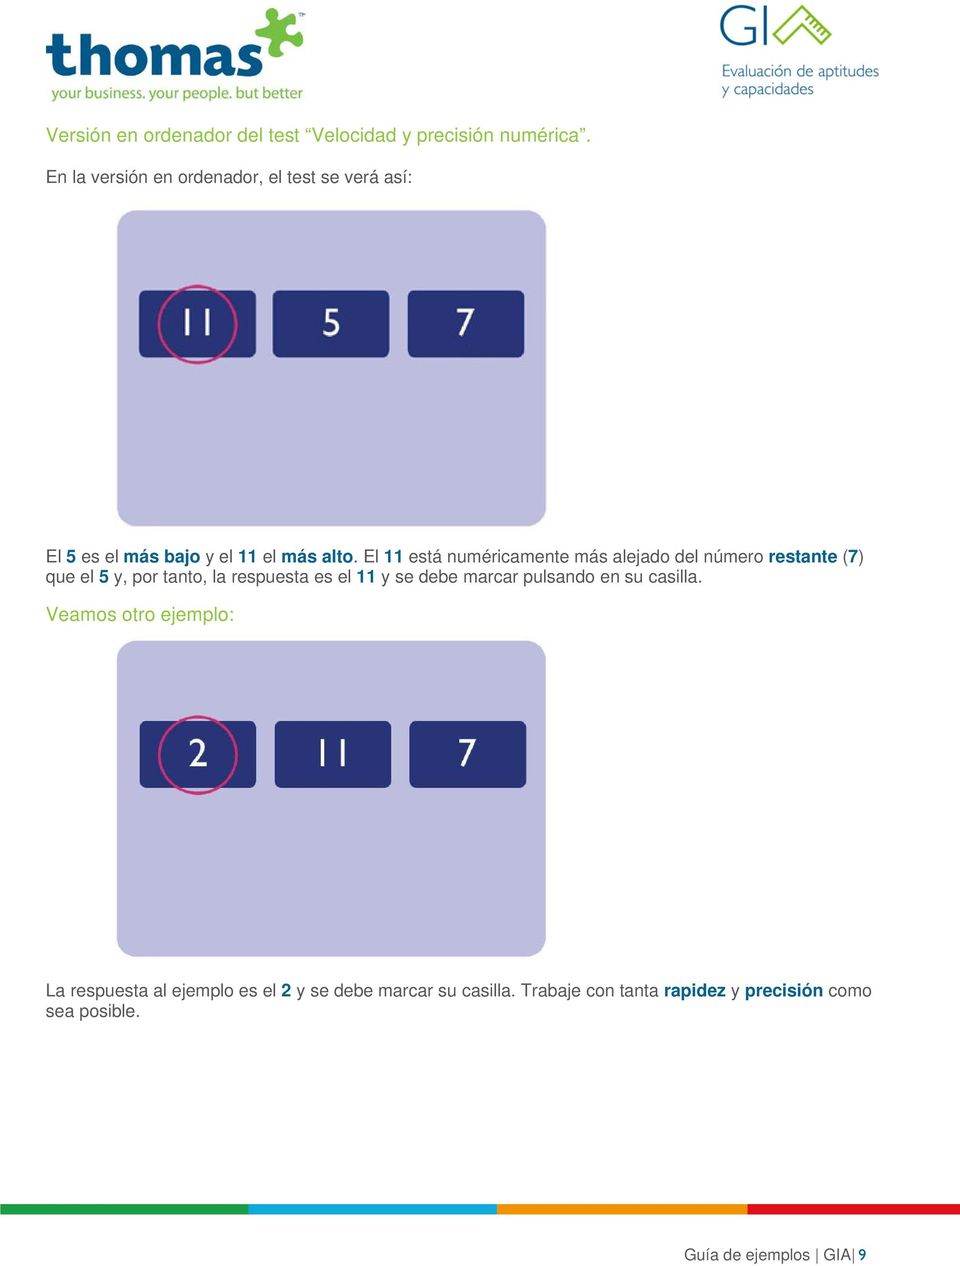 El 11 está numéricamente más alejado del número restante (7) que el 5 y, por tanto, la respuesta es el 11 y se